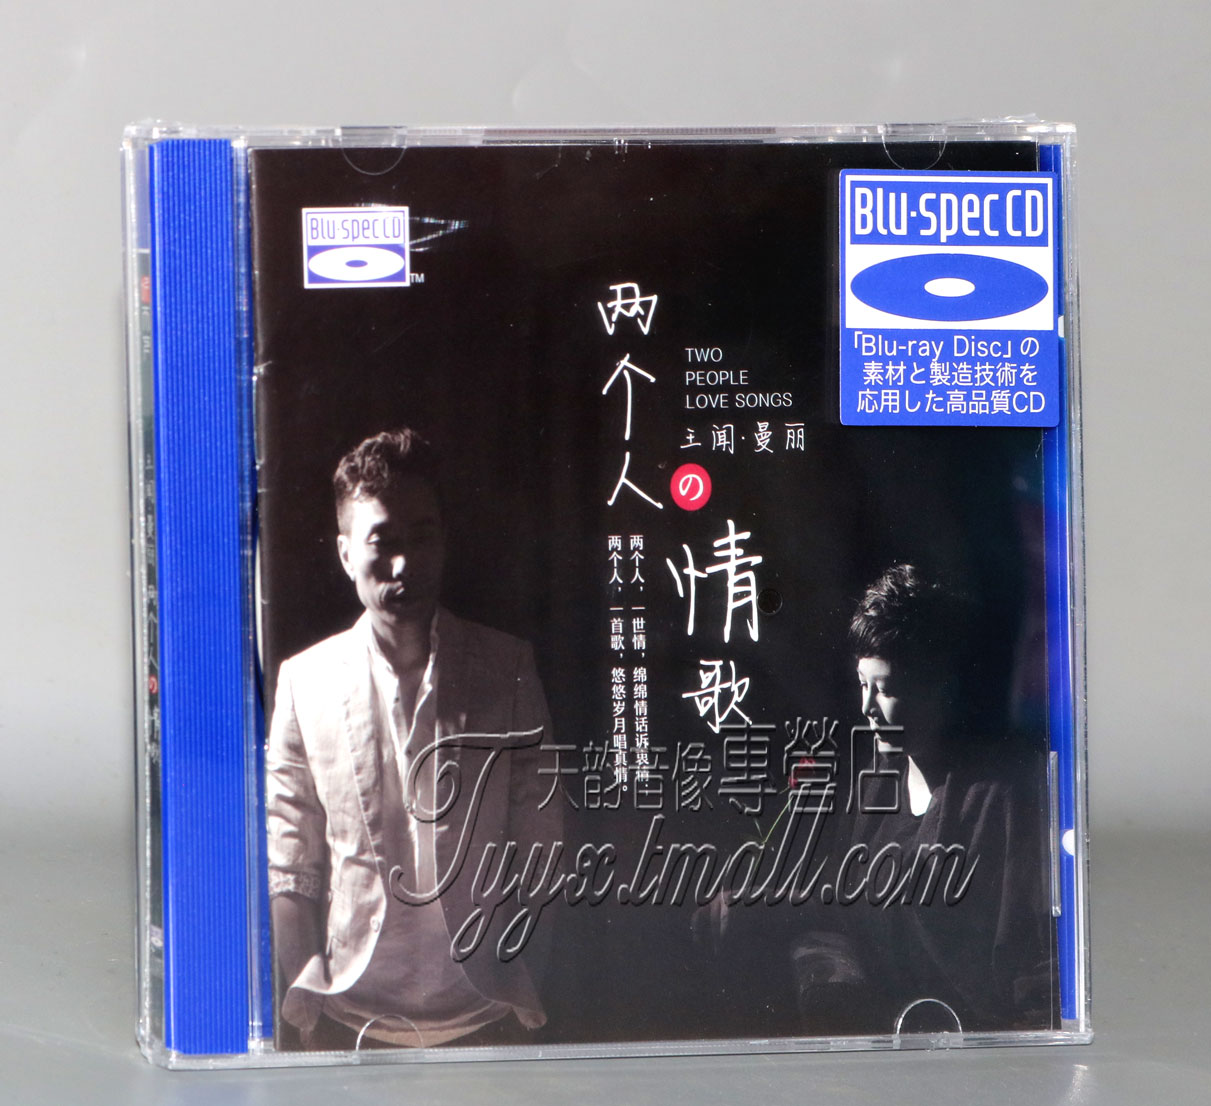 听天下唱片 王闻 曼丽 两个人的情歌 蓝光BSCD高音质HIFI试音CD碟